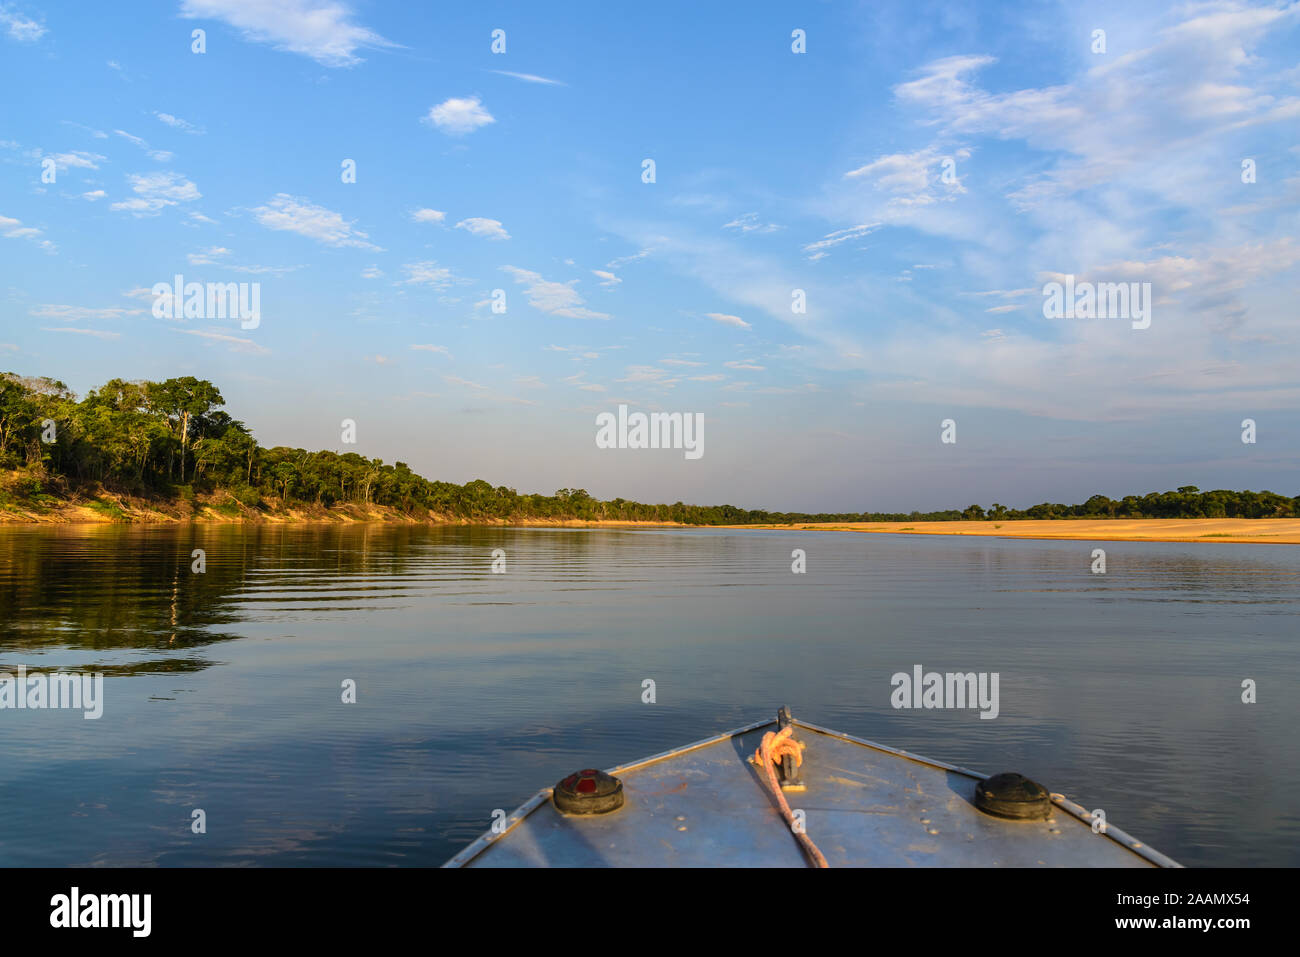 Vue depuis un bateau de Rio Araguaia, un affluent important du bassin de l'Amazone. Tocantins, au Brésil, en Amérique du Sud. Banque D'Images